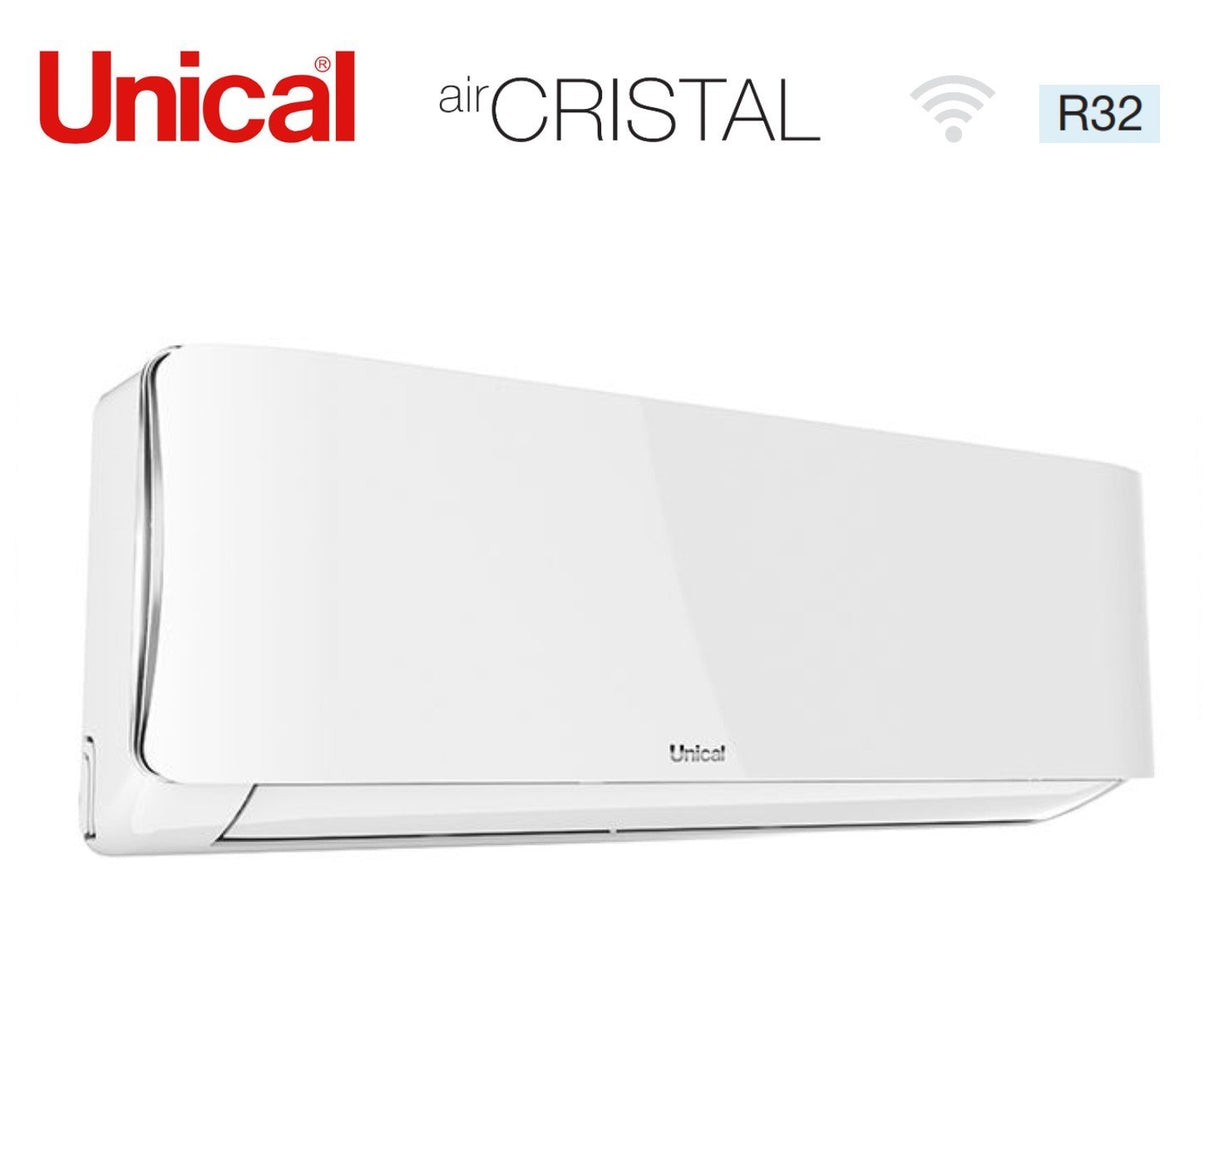 immagine-3-unical-climatizzatore-condizionatore-unical-quadri-split-inverter-serie-air-cristal-10101013-con-kmx4-36he-r-32-wi-fi-optional-10000100001000013000